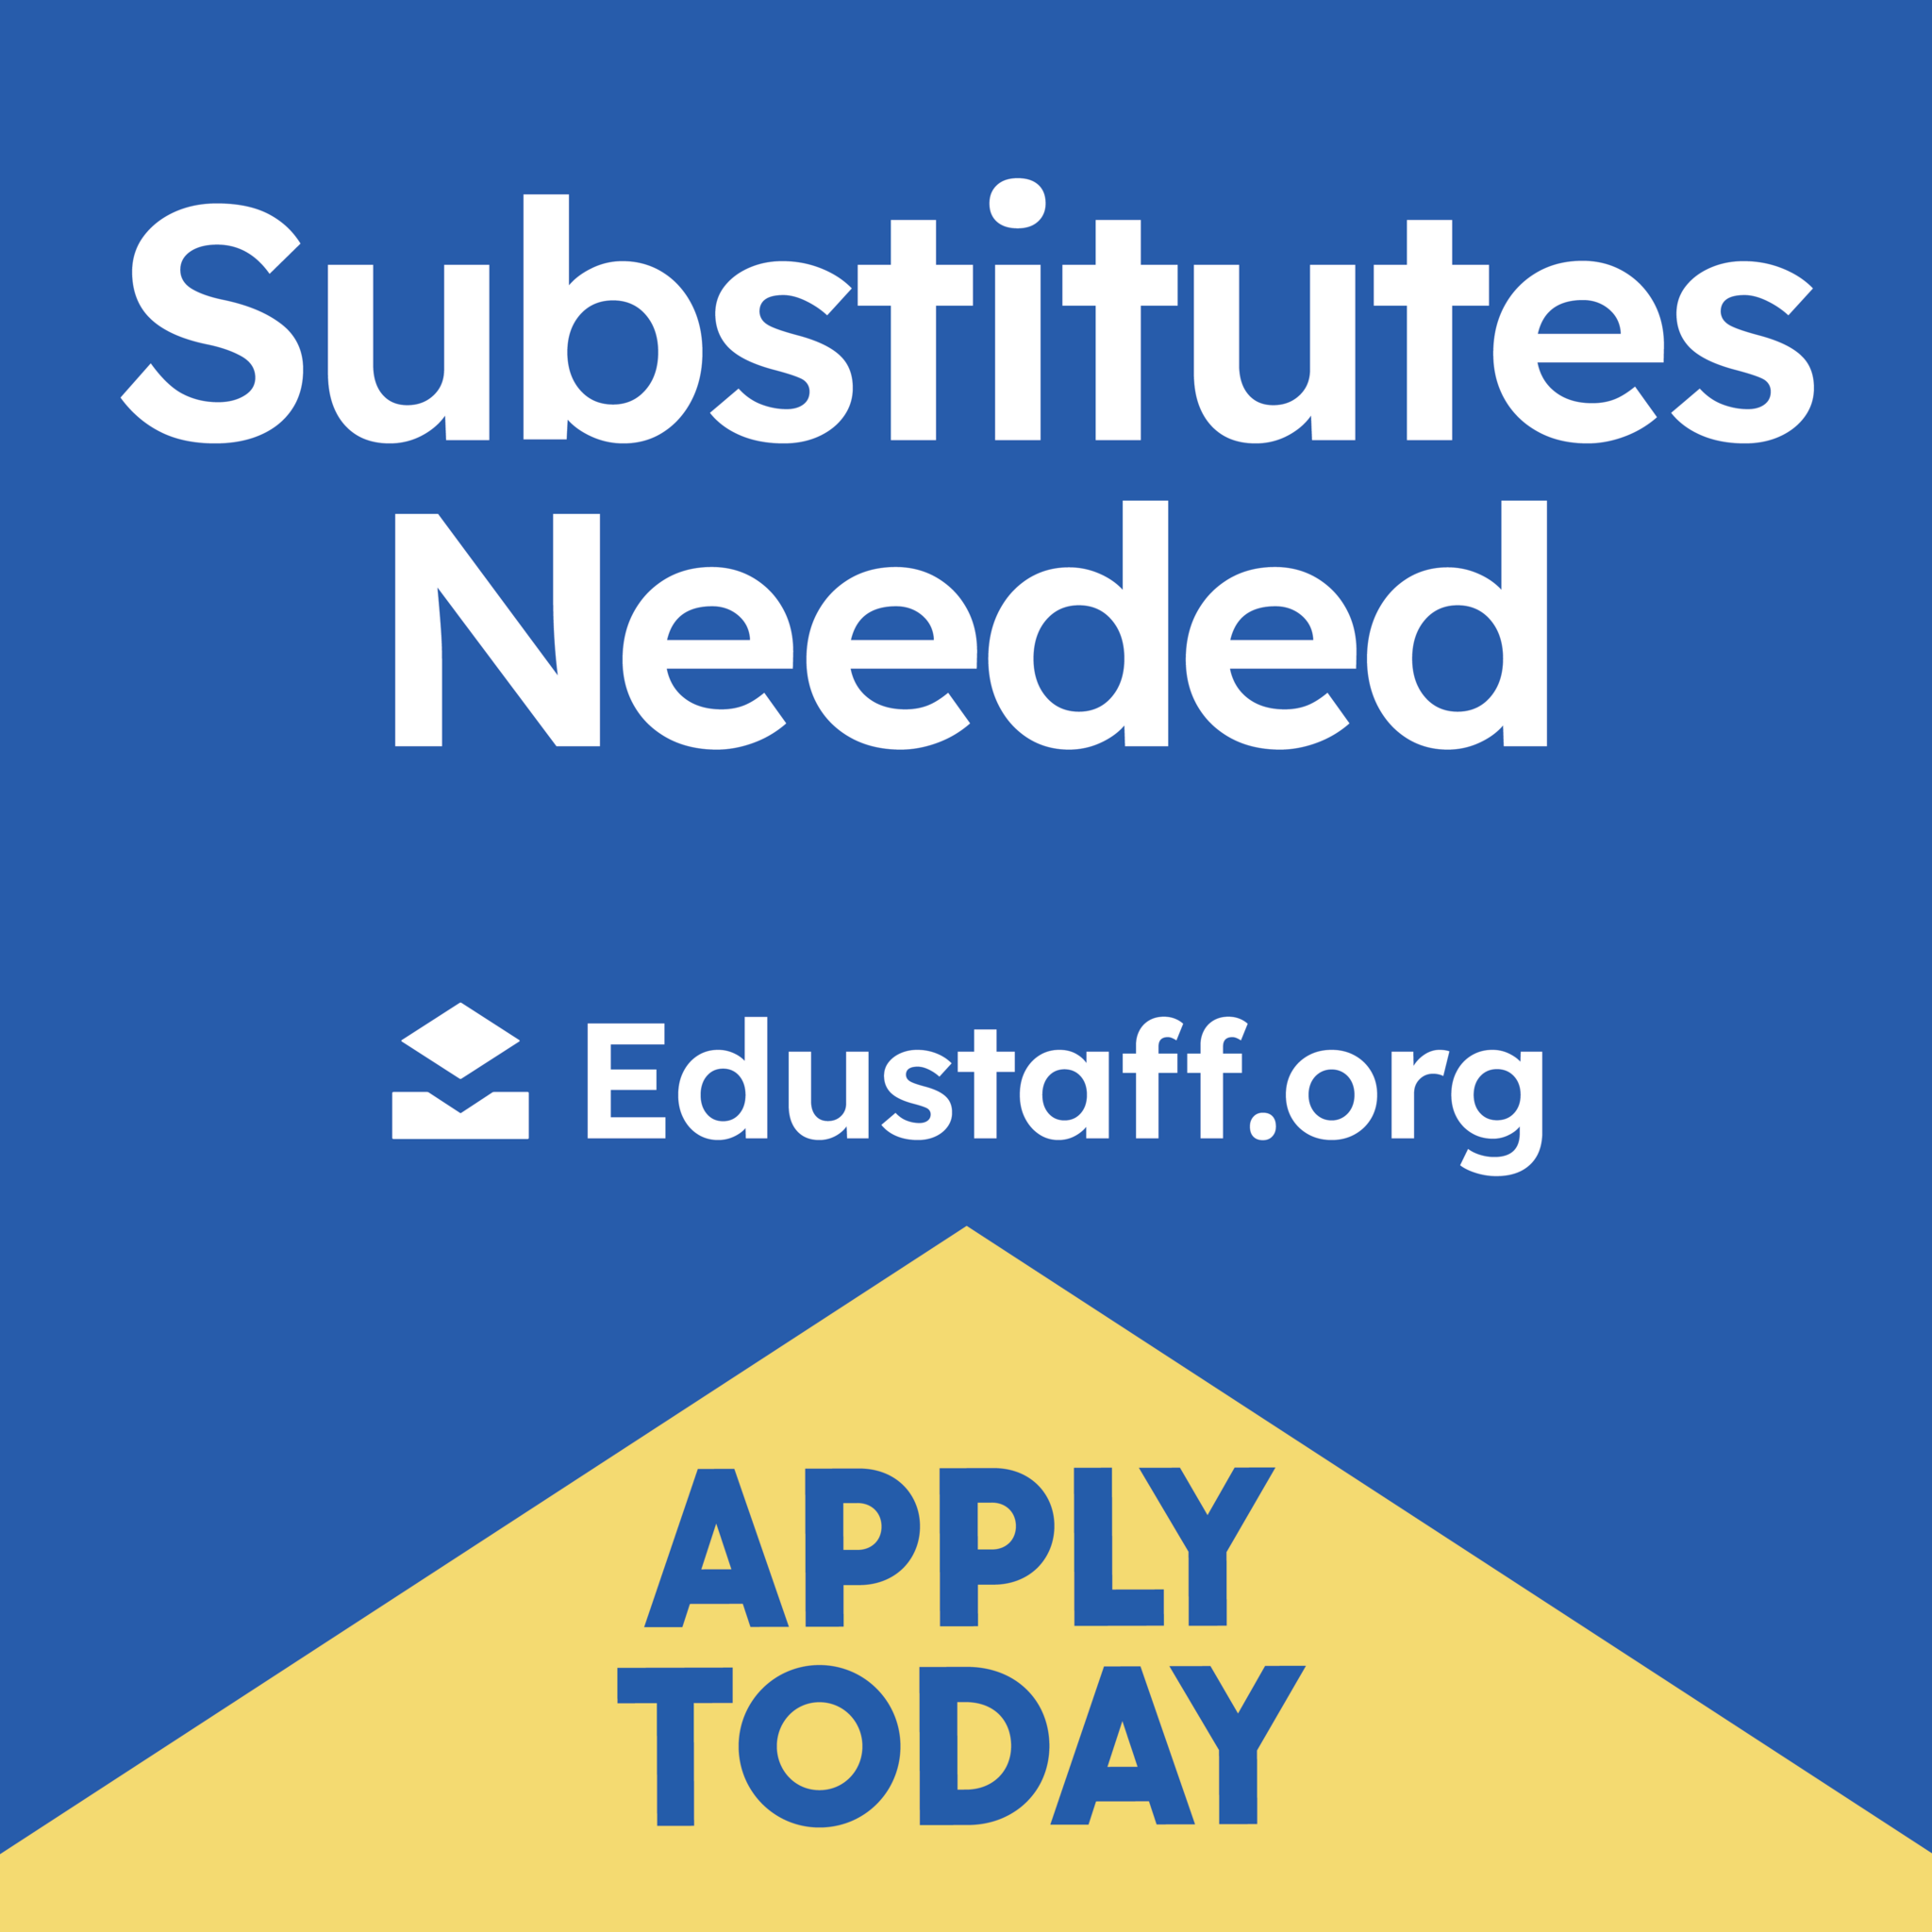 Substitutes Needed - Edustaff.org